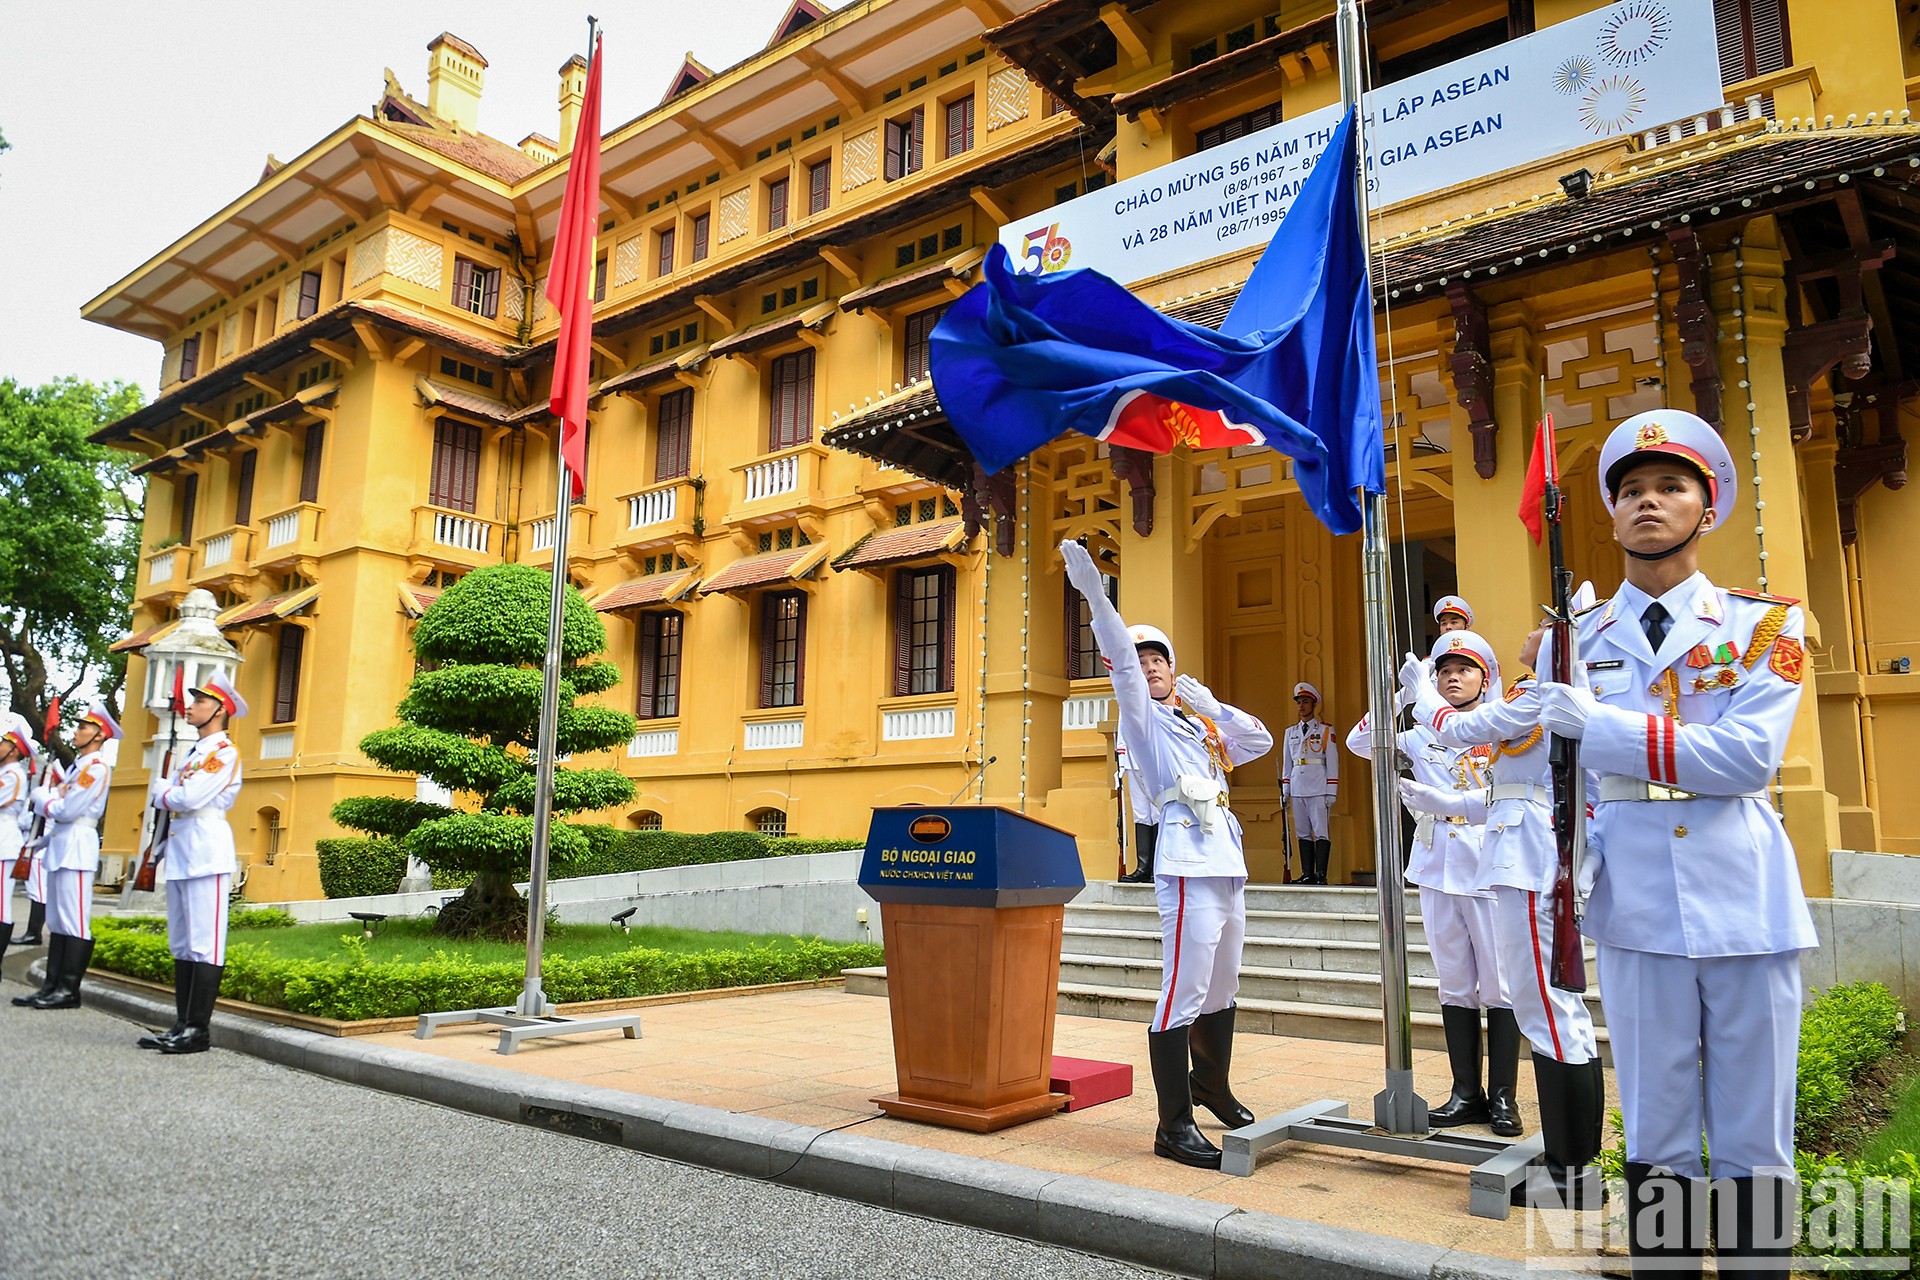 [Foto] Ceremonia de izamiento de bandera con motivo del 56 aniversario de Asean